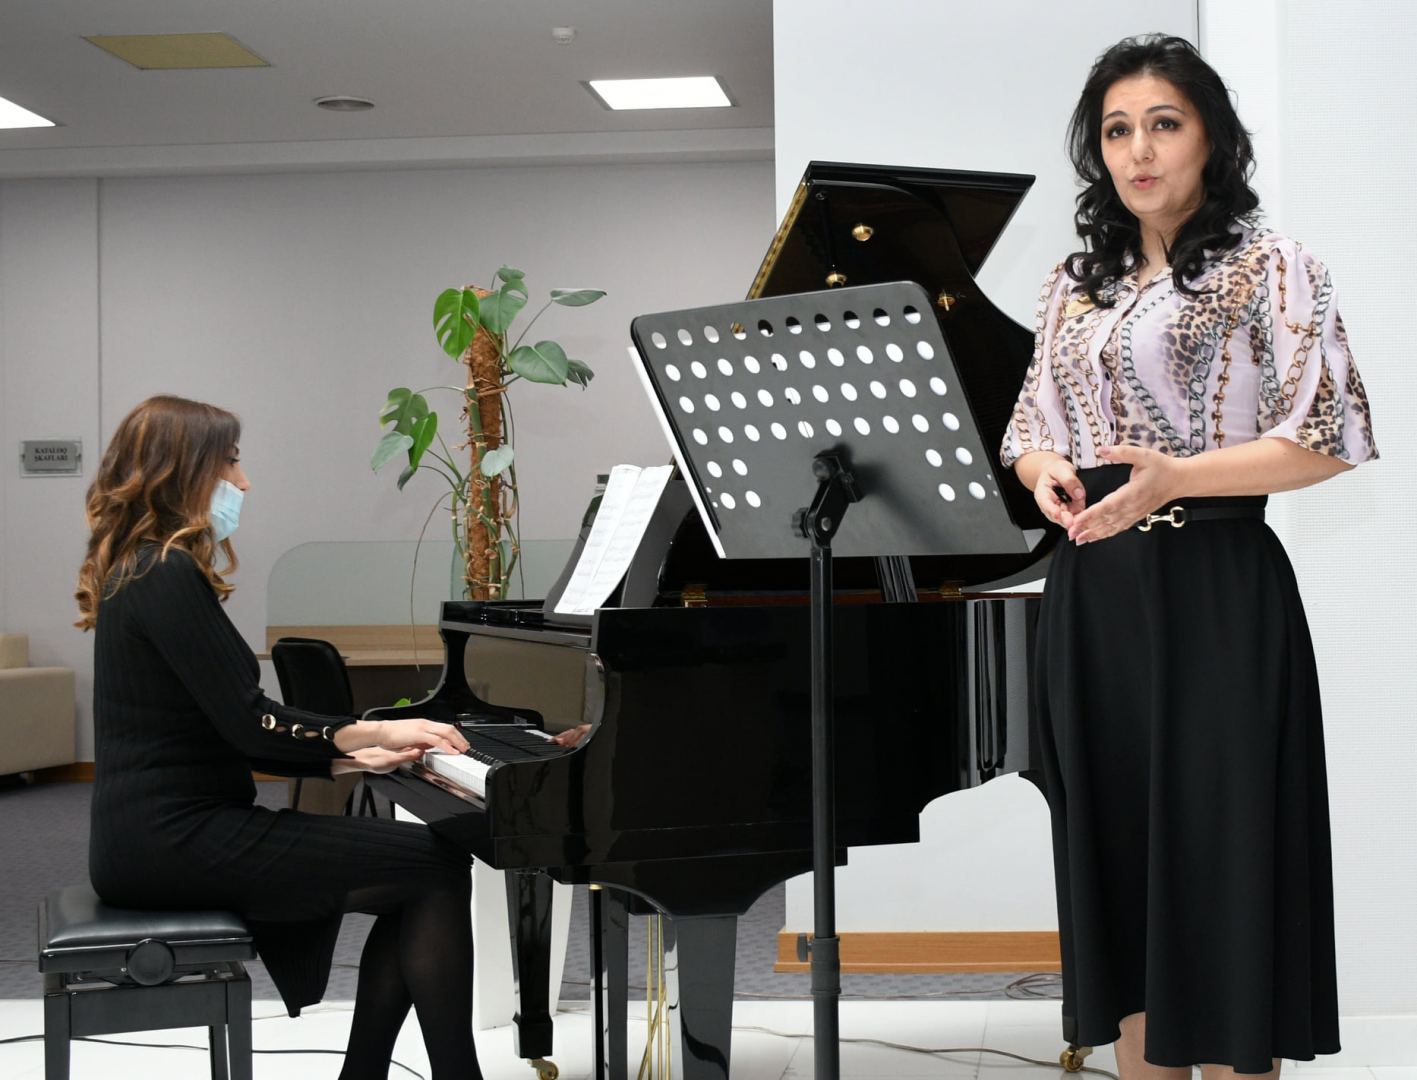 Правильное применение азербайджанского языка в исполнительском искусстве - дискуссии (ФОТО)